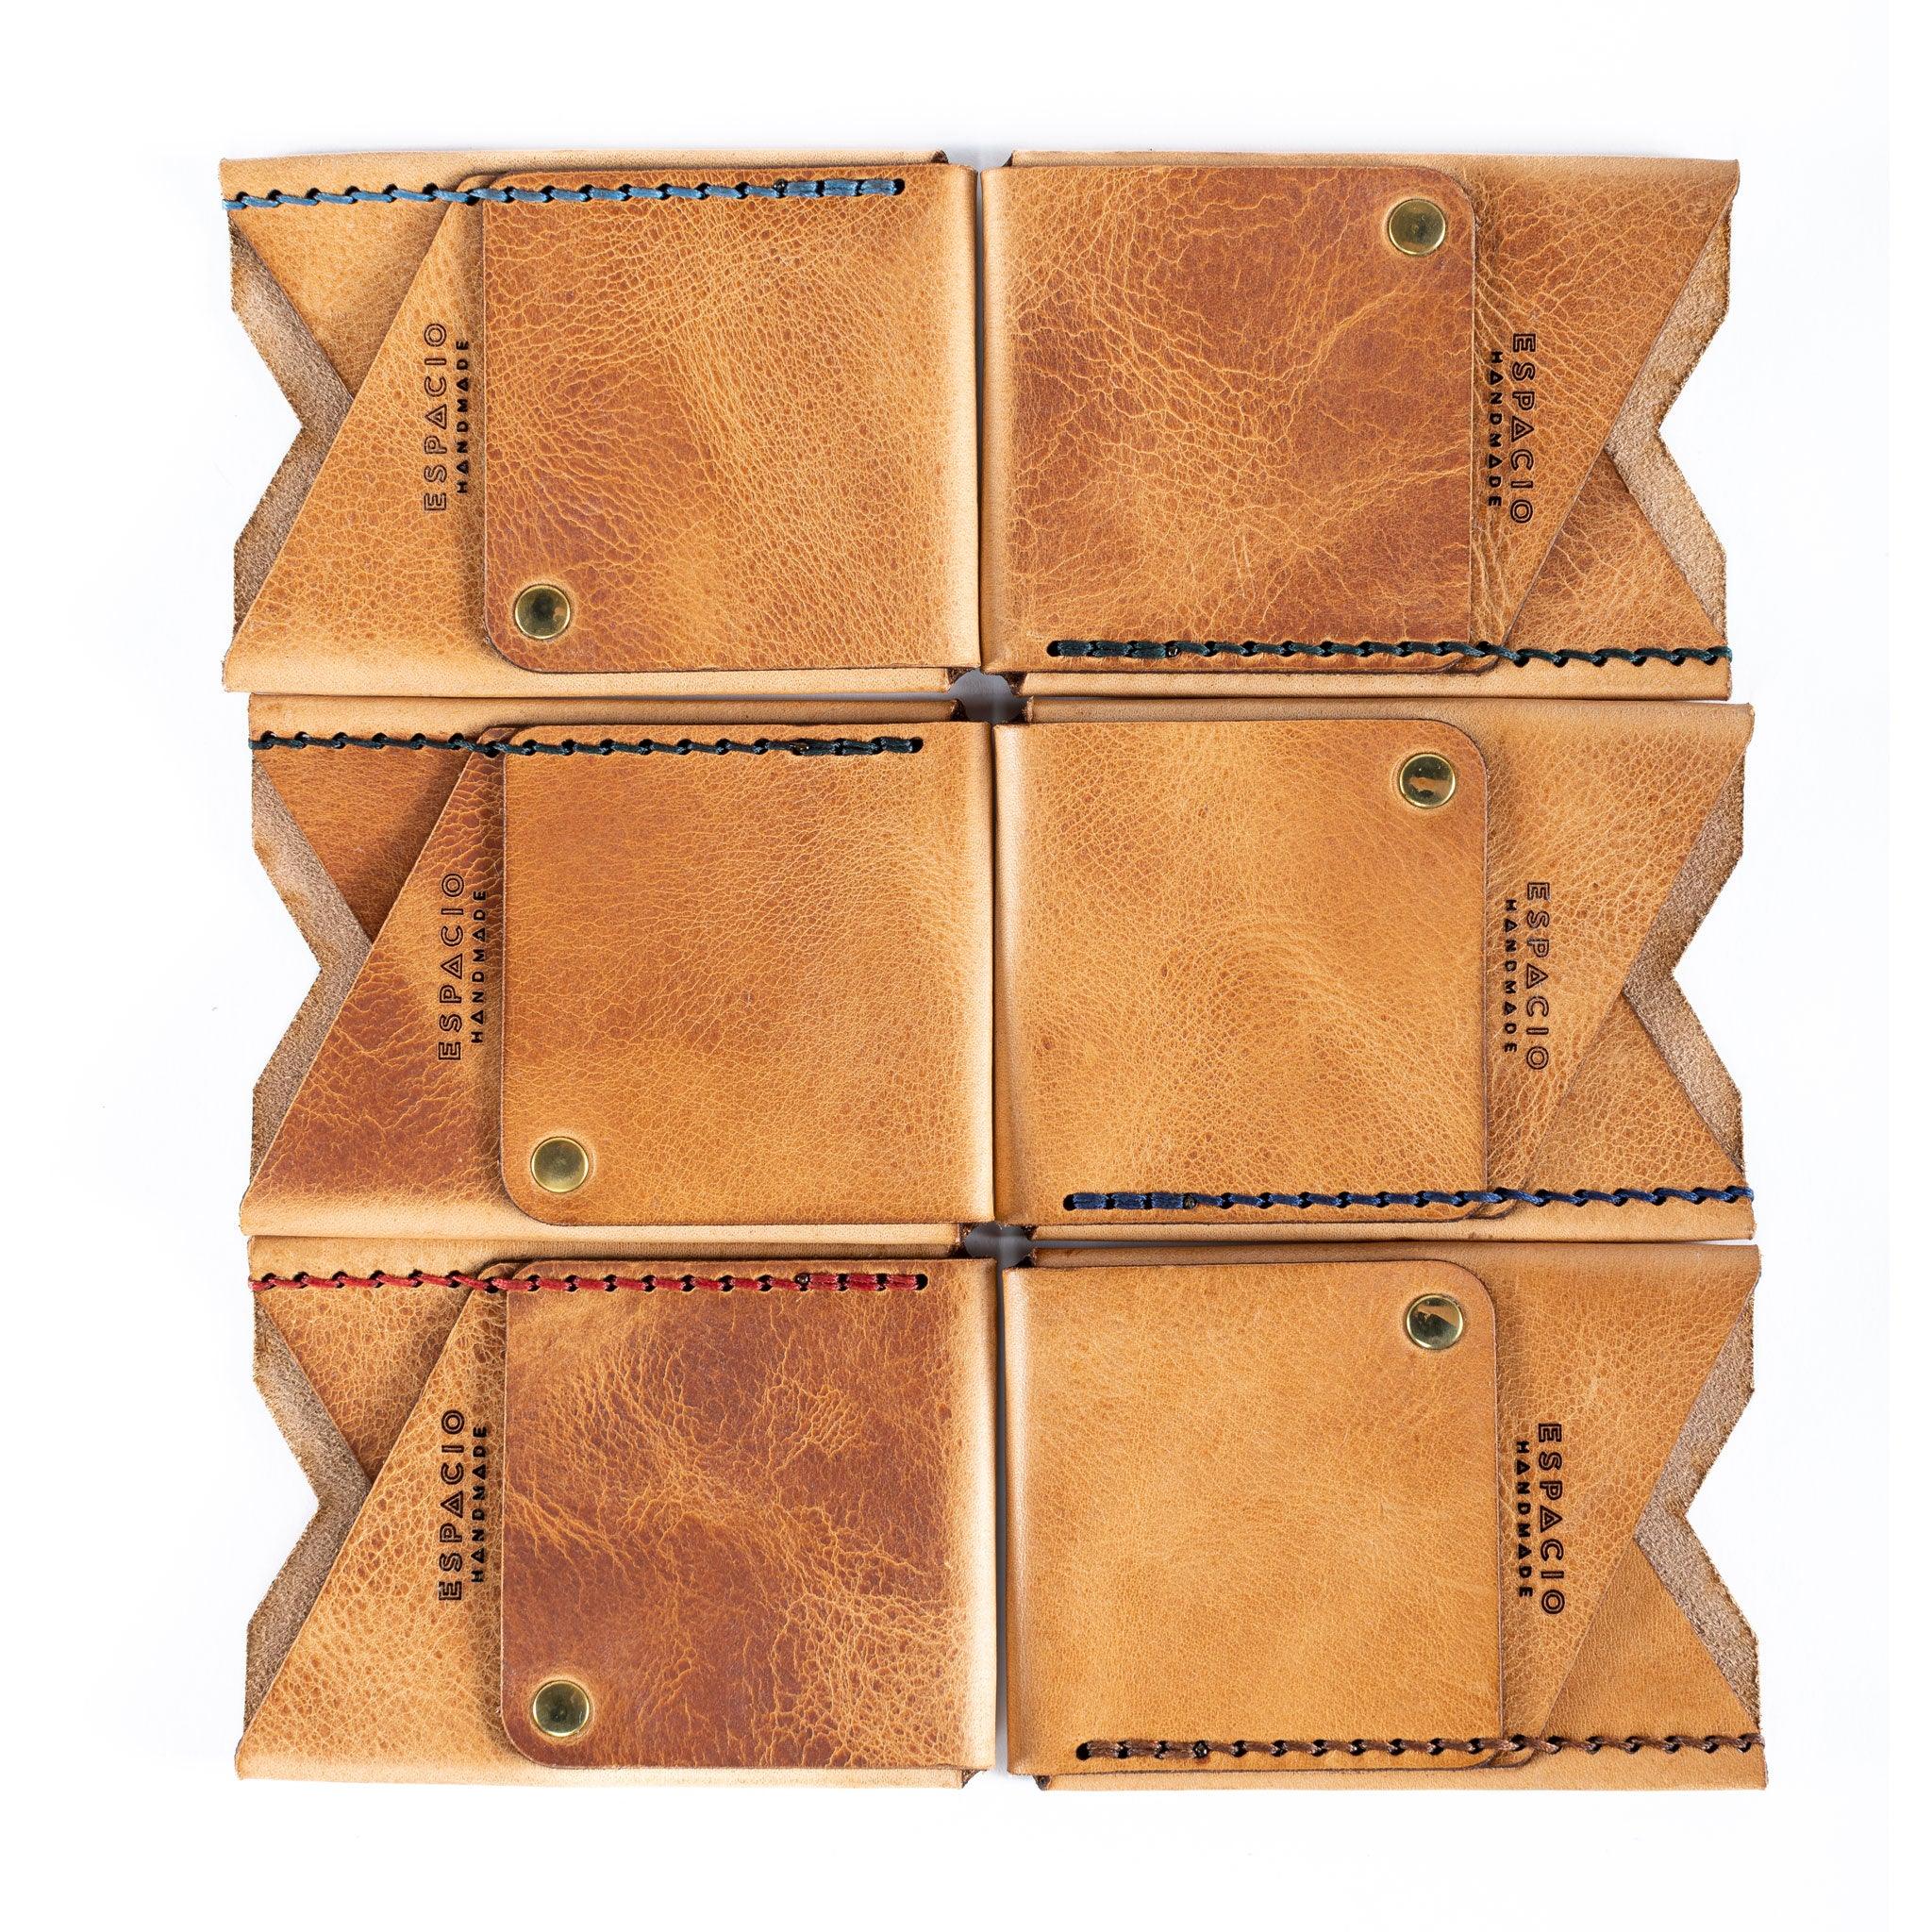 Big Spender Leather Wallet in Desert - Espacio Handmade